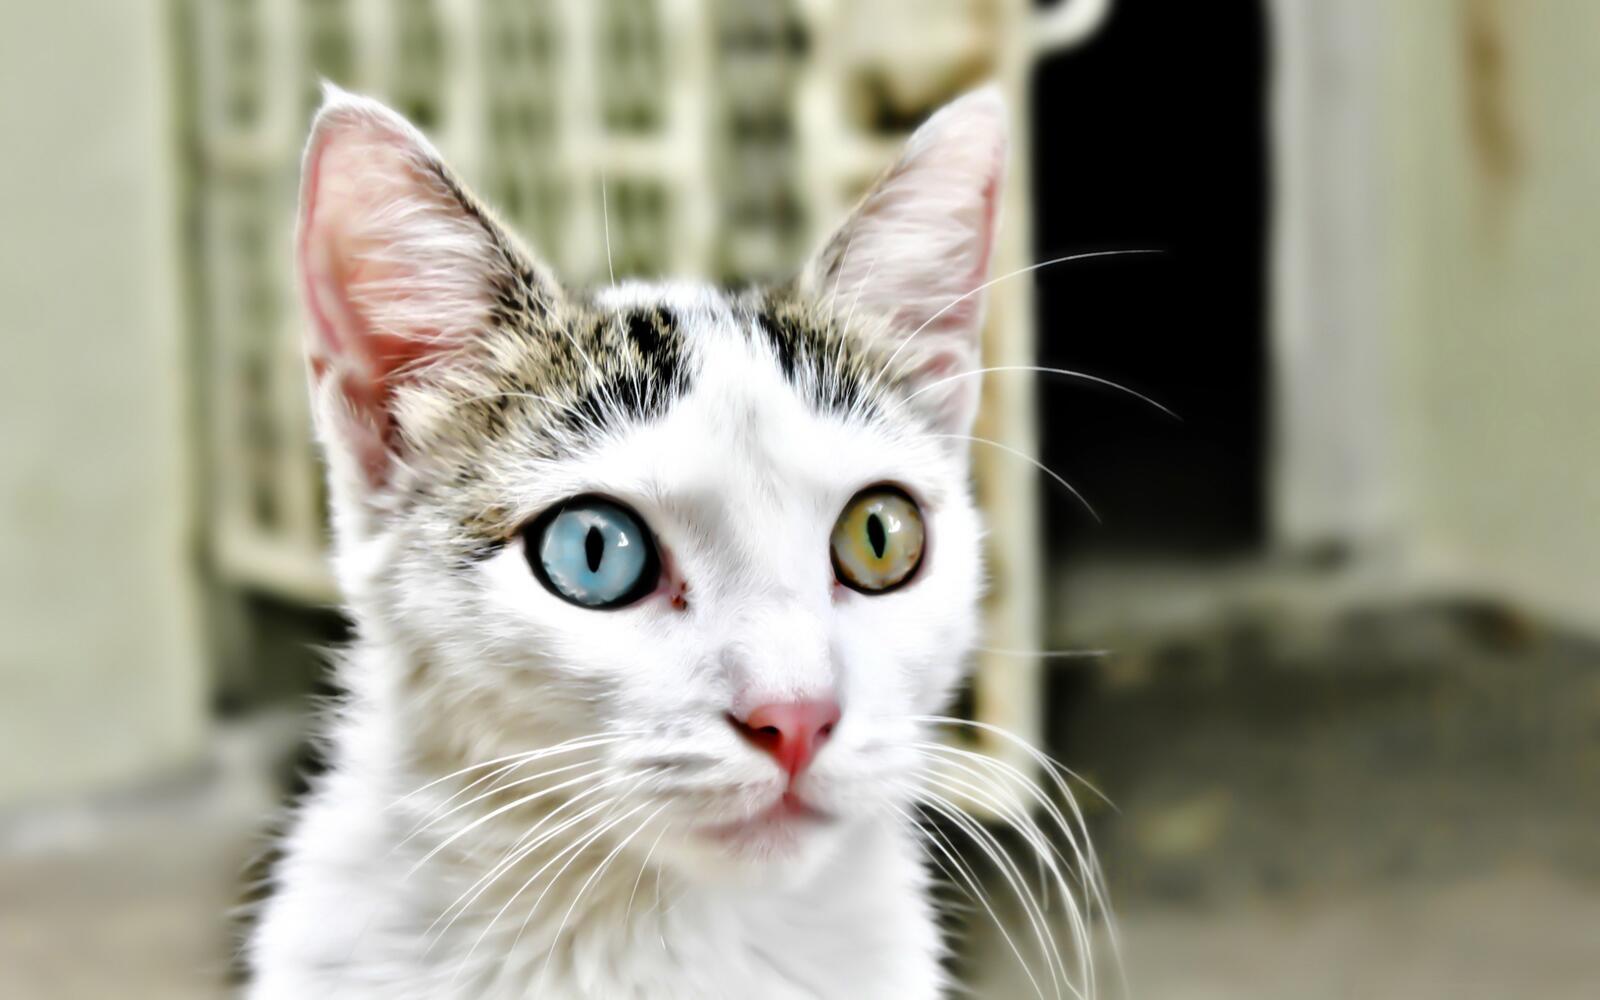 Wallpapers cat heterochromia muzzle on the desktop